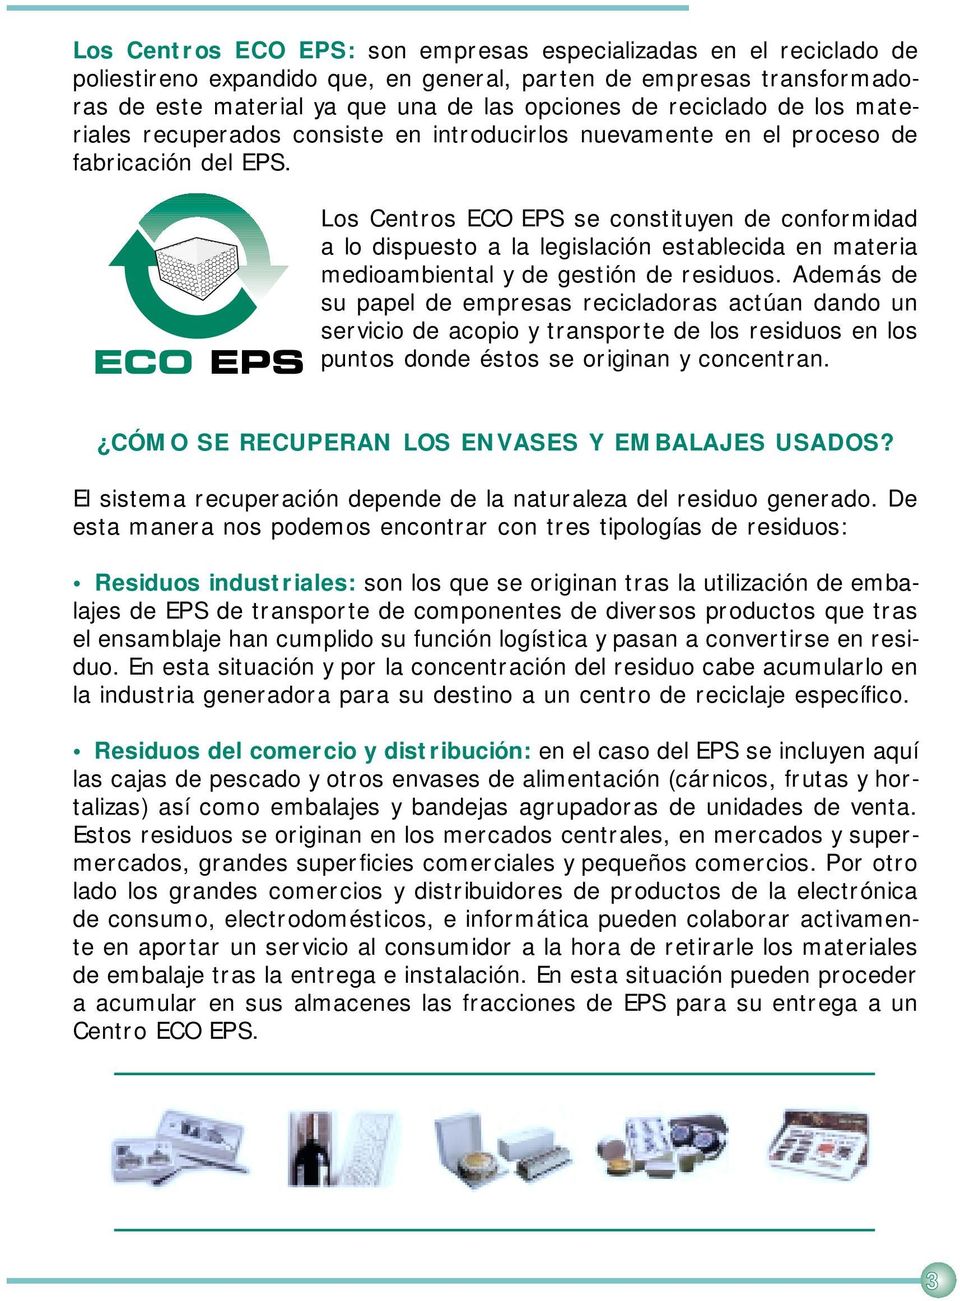 Los Centros ECO EPS se constituyen de conformidad a lo dispuesto a la legislación establecida en materia medioambiental y de gestión de residuos.